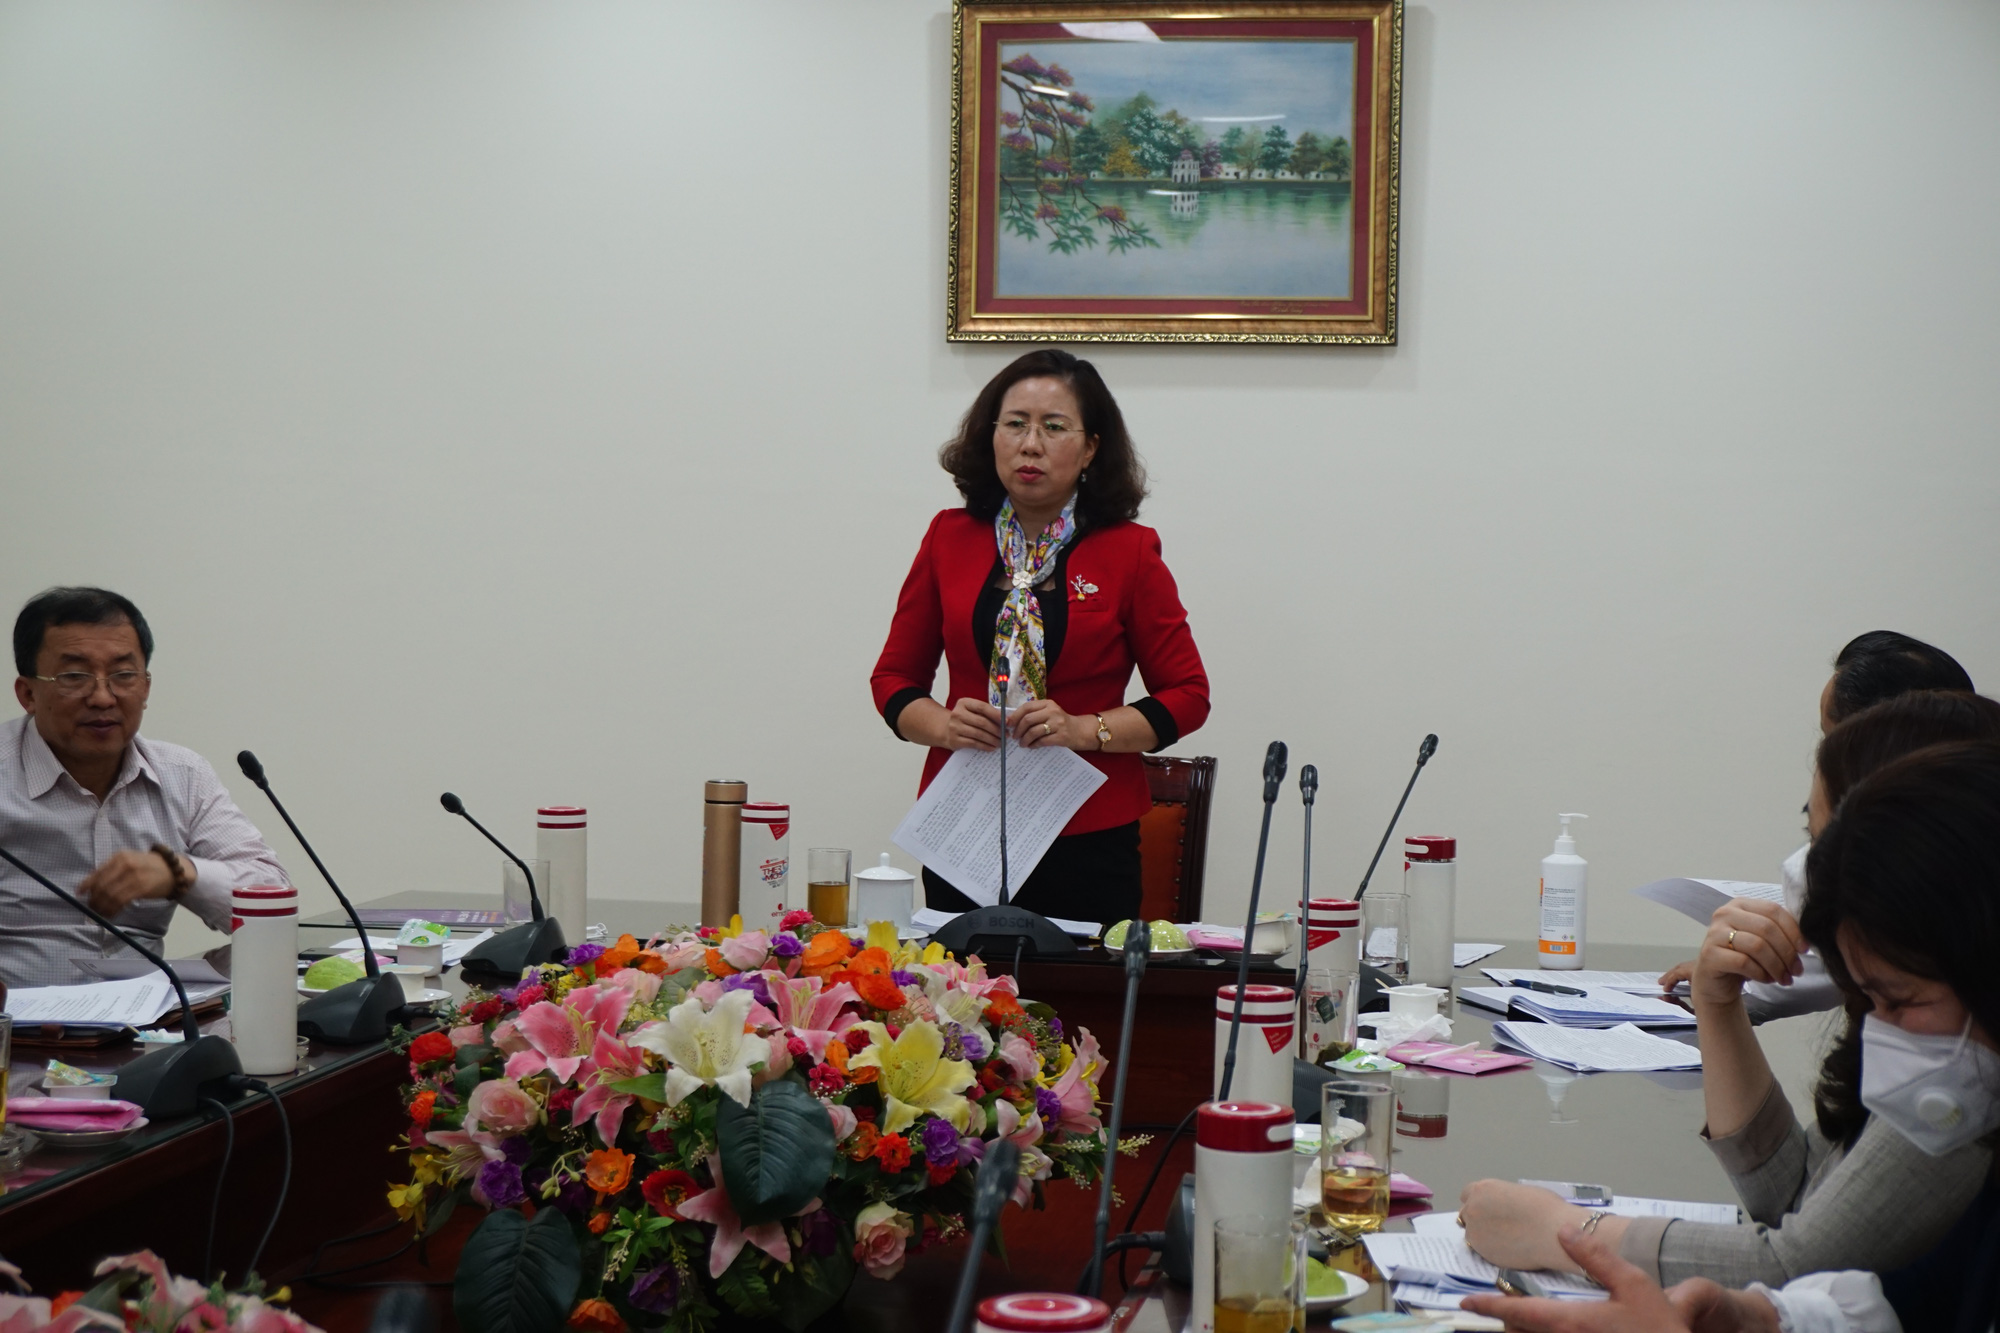 Phó Chủ tịch Hội NDVN Bùi Thị Thơm: Khơi dậy tiềm năng, phát huy vai trò cán bộ nữ vì sự tiến bộ phụ nữ - Ảnh 2.